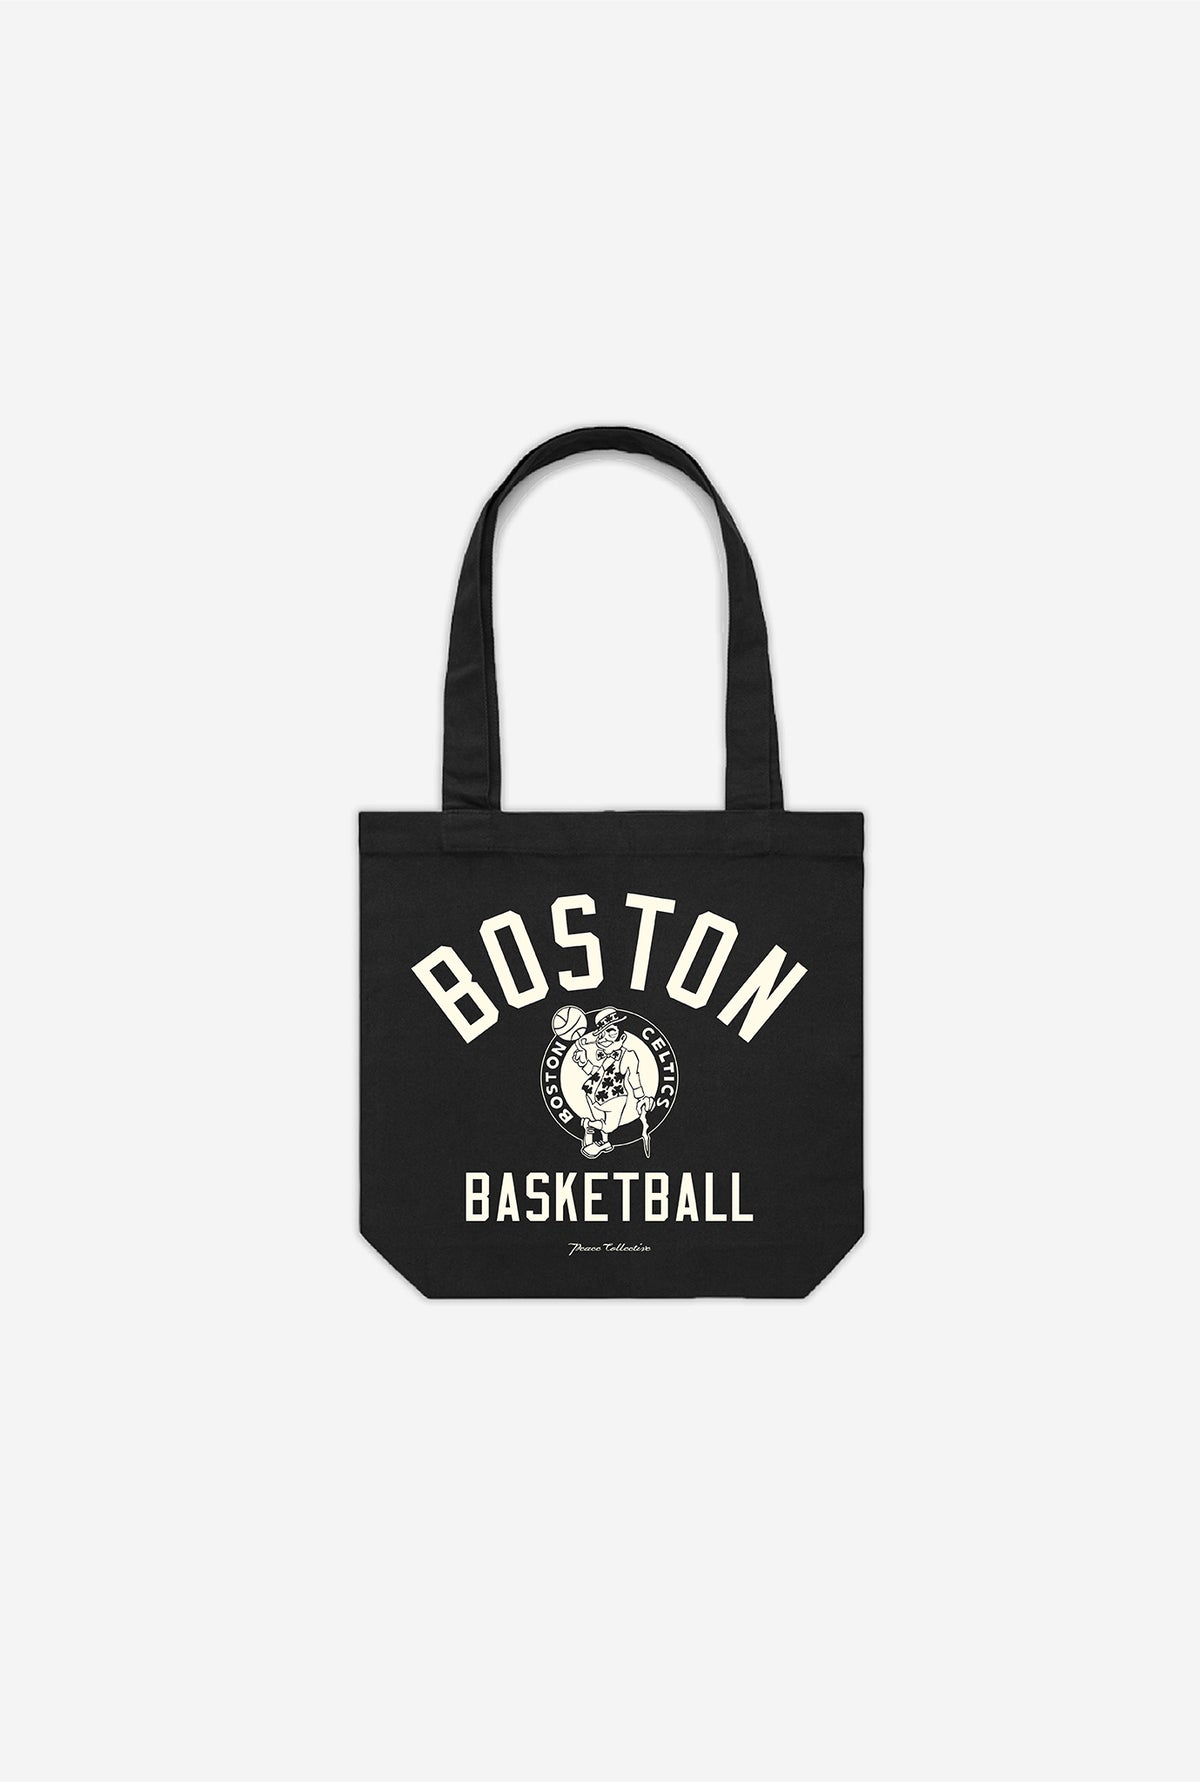 Boston Celtics Tote Bag - Black